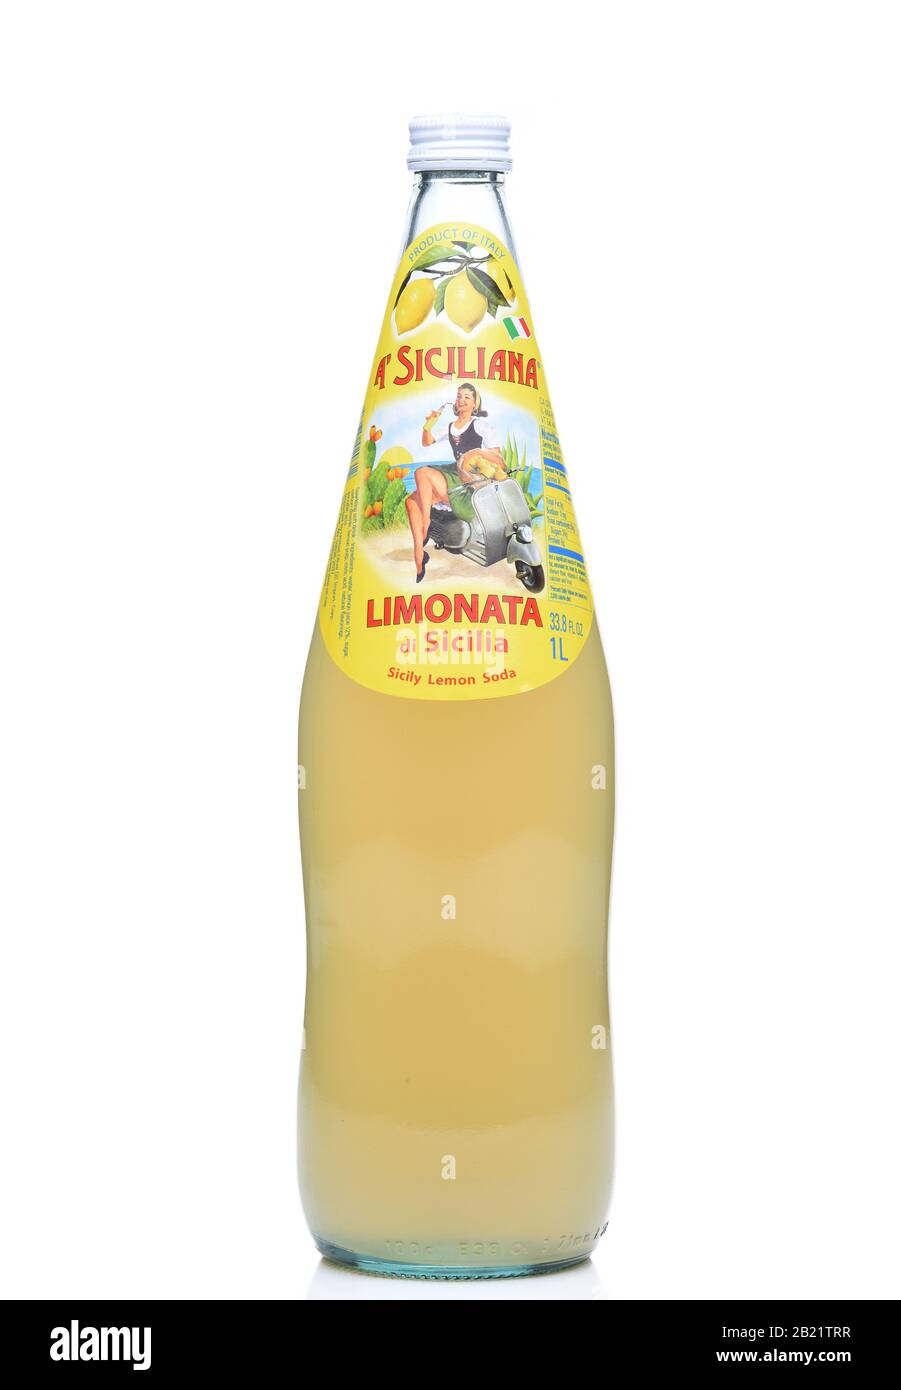 Irvine, KALIFORNIEN - DEC 4, 2018: Flasche EINER Siciliana Limonata. Eine kohlensäurehaltige Zitronensoda aus Italien. Stockfoto